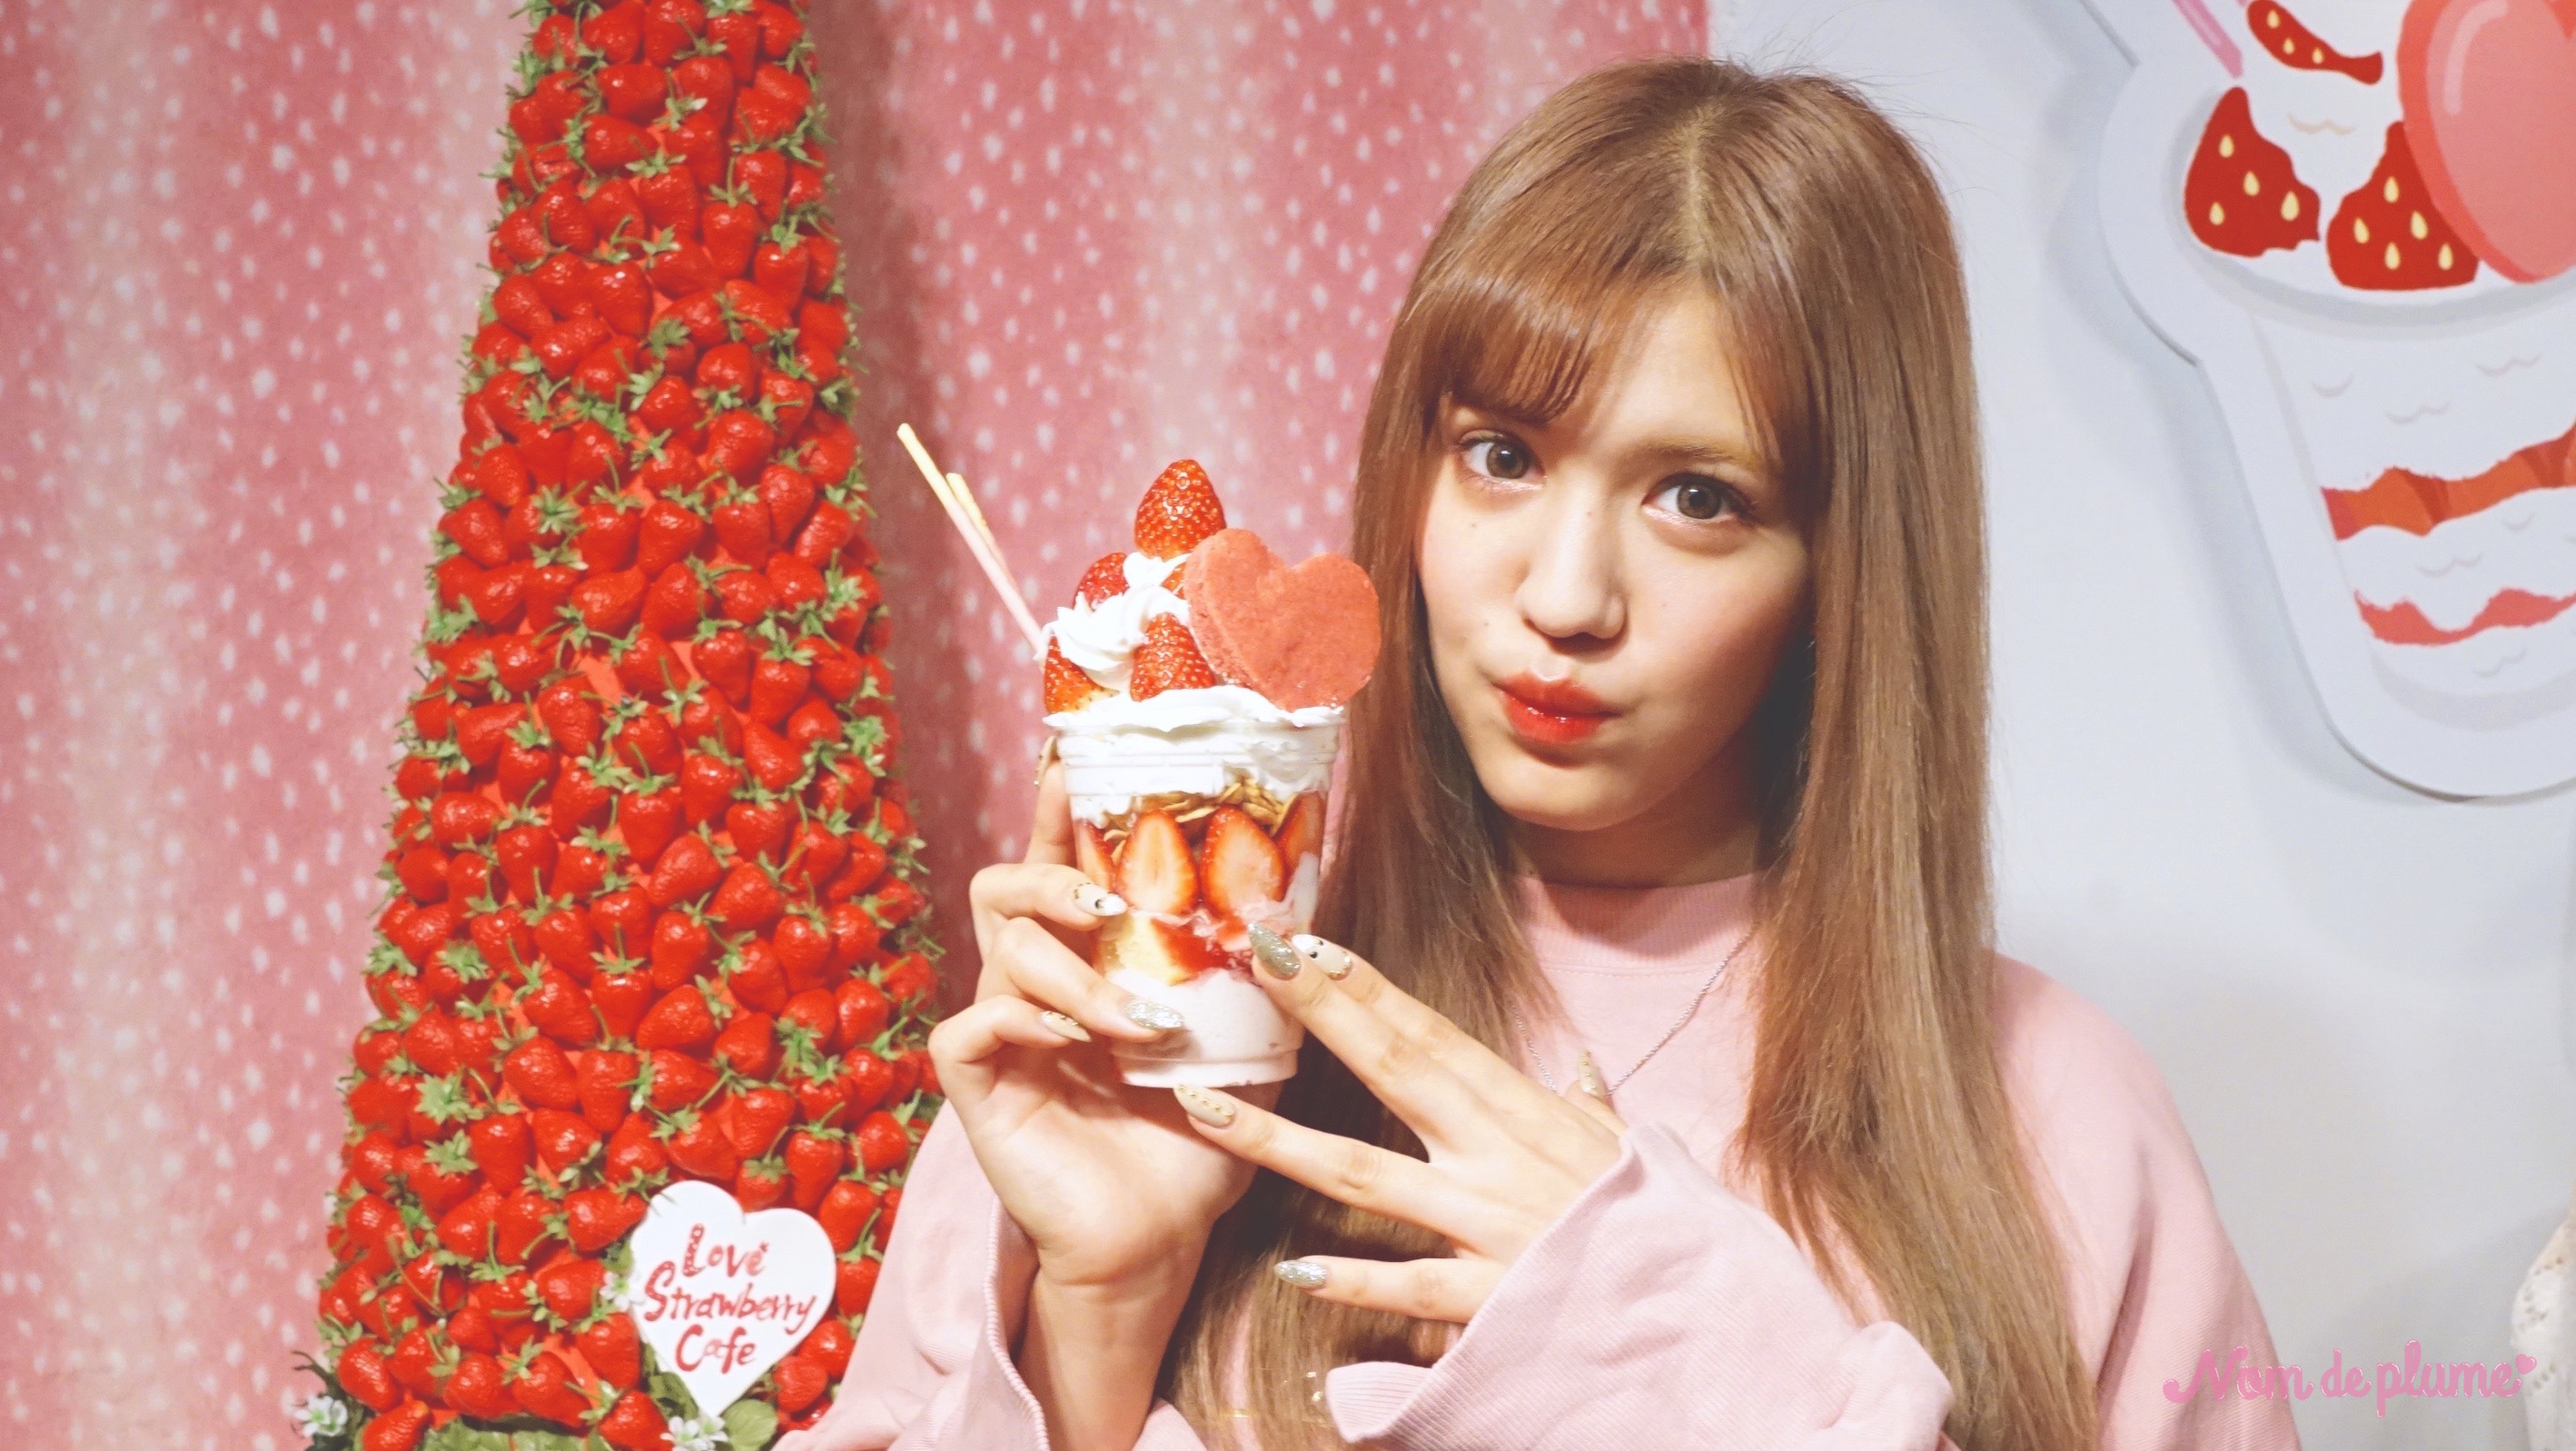 🍓苺×ピンクの世界🍓「スシローいちごフェア」開催イベント『Love Strawberry Cafe』に潜入💁💗